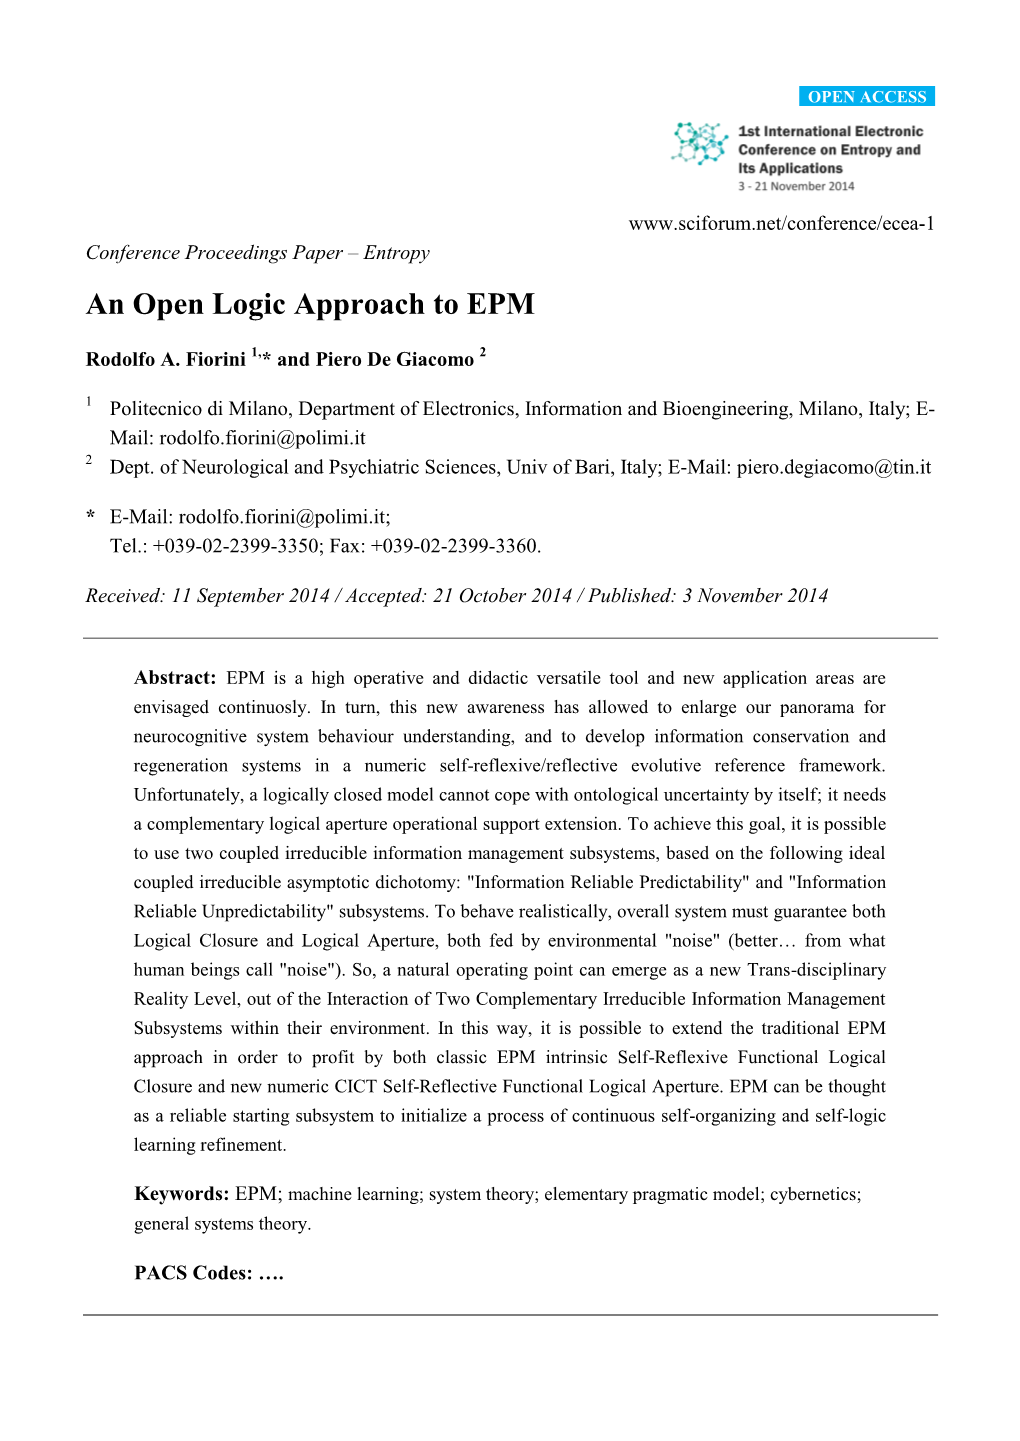 An Open Logic Approach to EPM